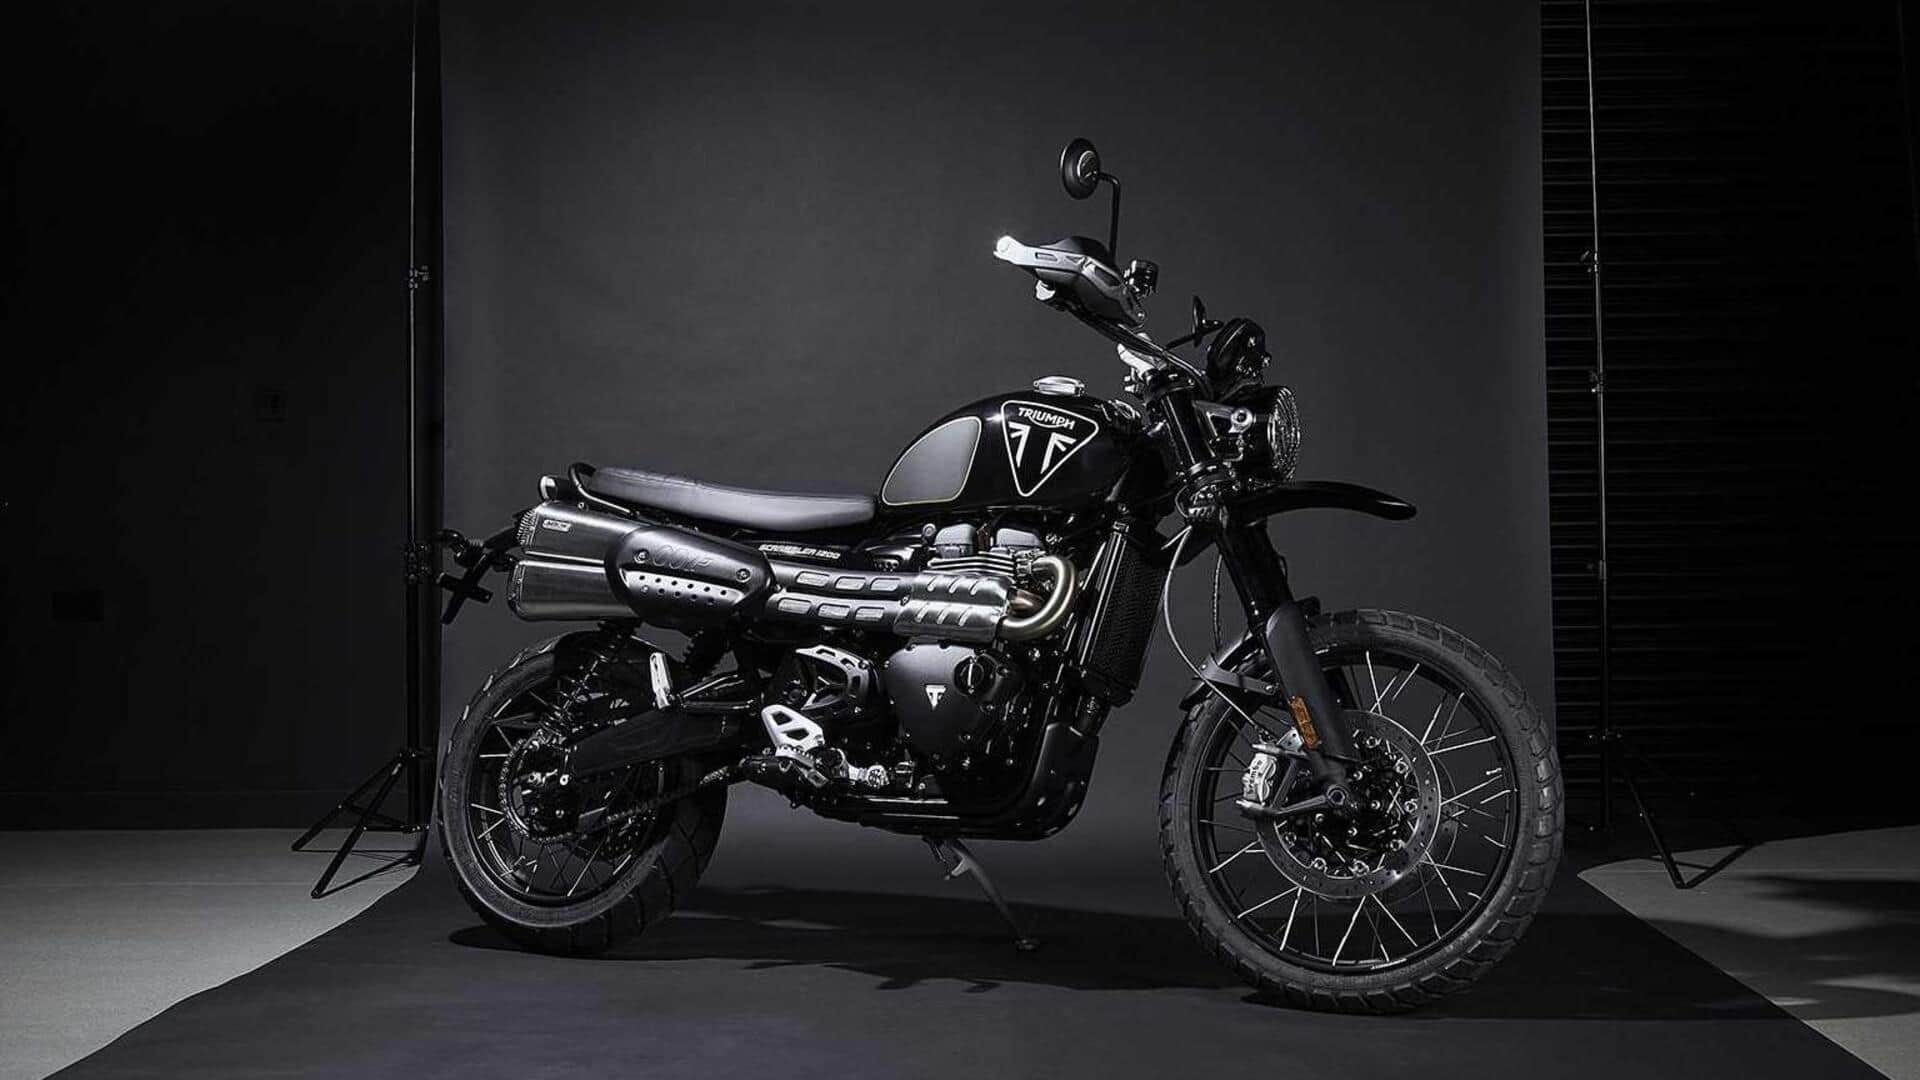 Ahead of June 27 debut, Bajaj-Triumph motorcycles spotted testing